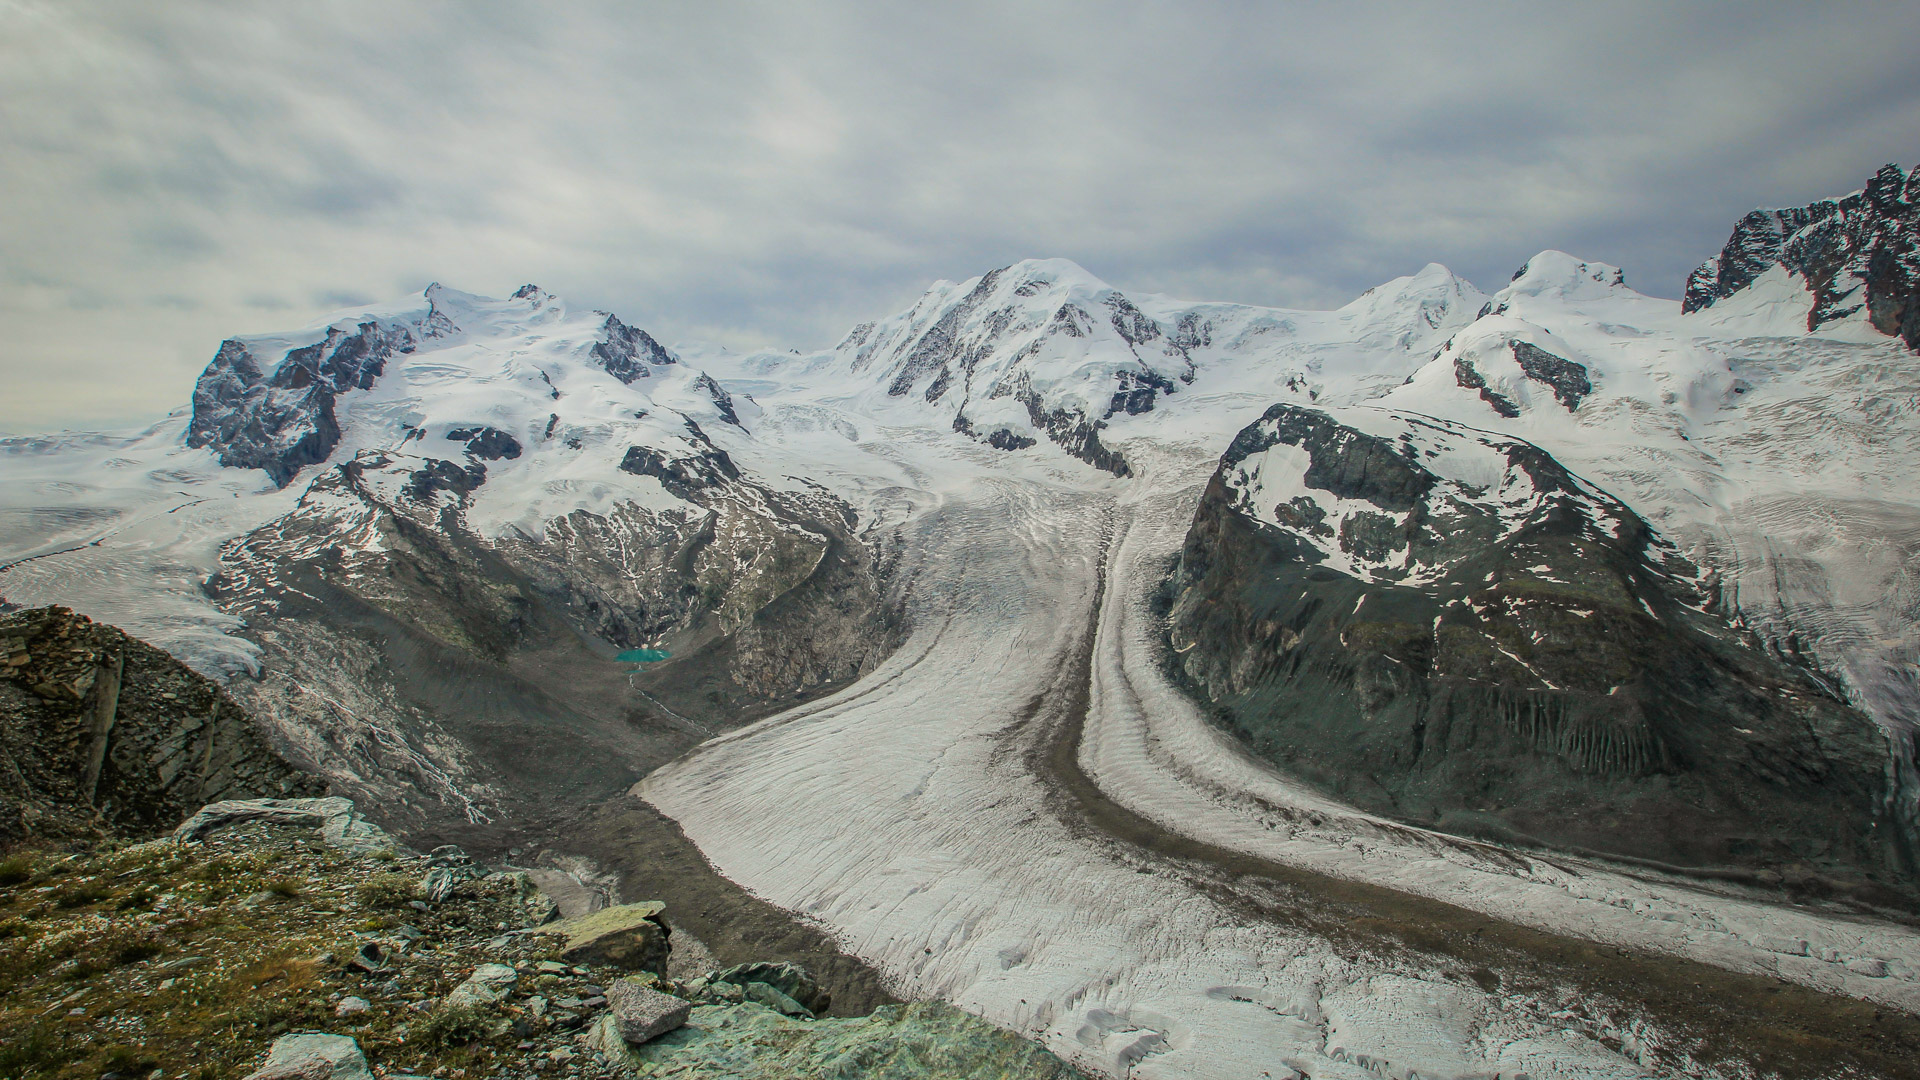 dans le massif du Cervin, un glacier au pied de sommets minéraux